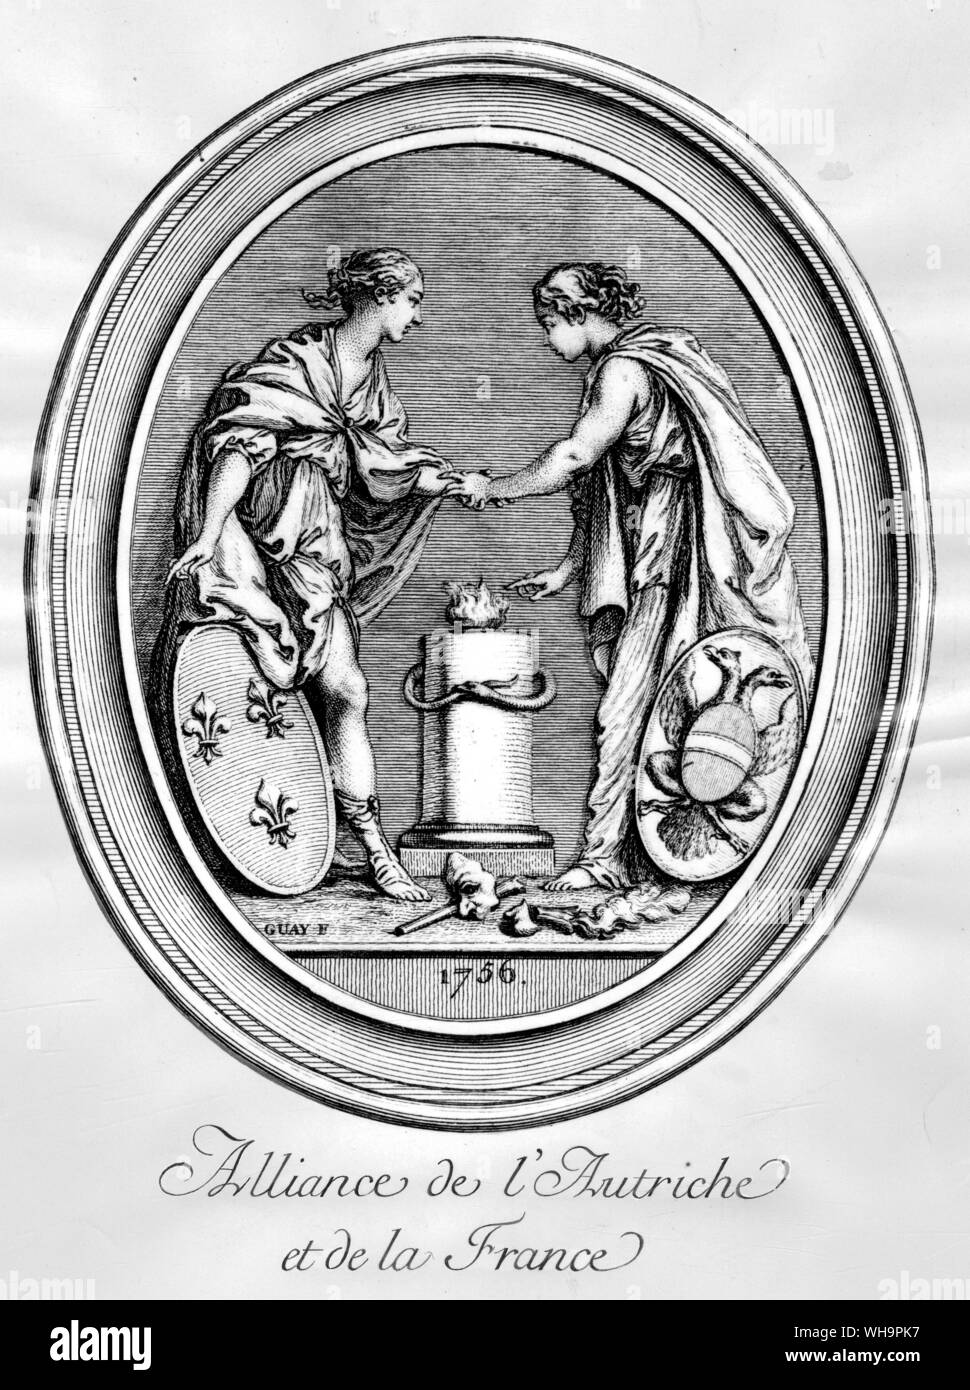 Alliance de l'Autriche et de la France.  Engraving by Madame de Pompadour Stock Photo